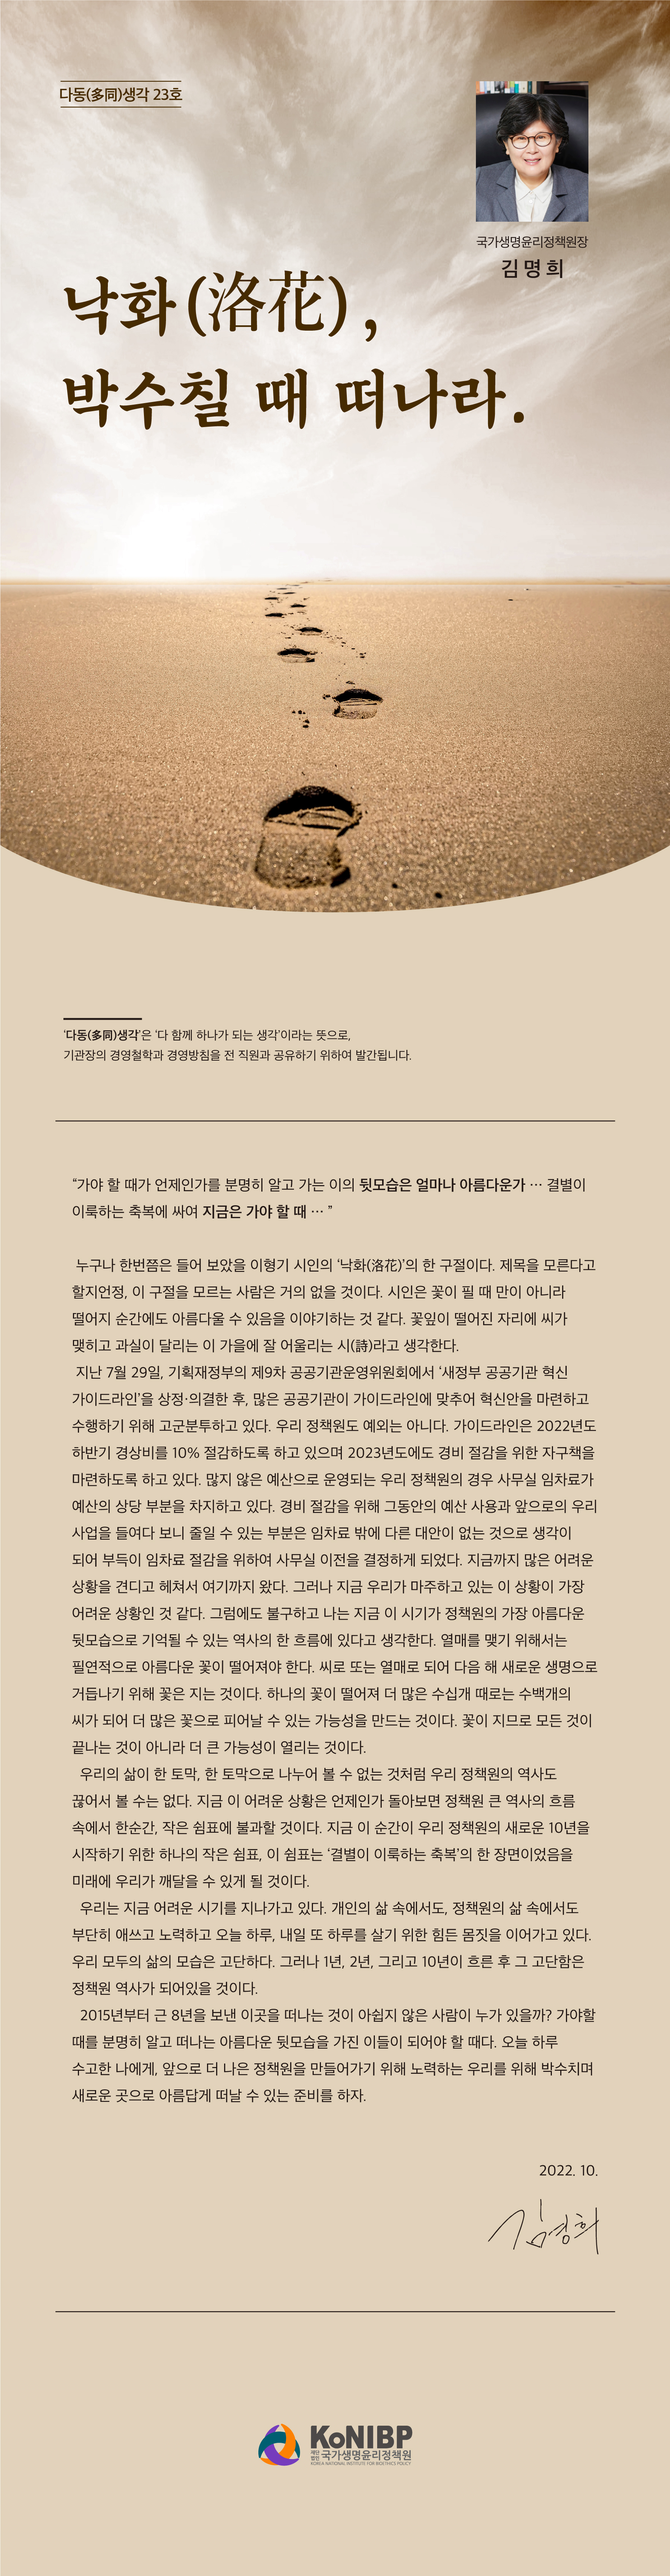 2210-국가생명윤리정책원-다동생각-23호최종.jpg